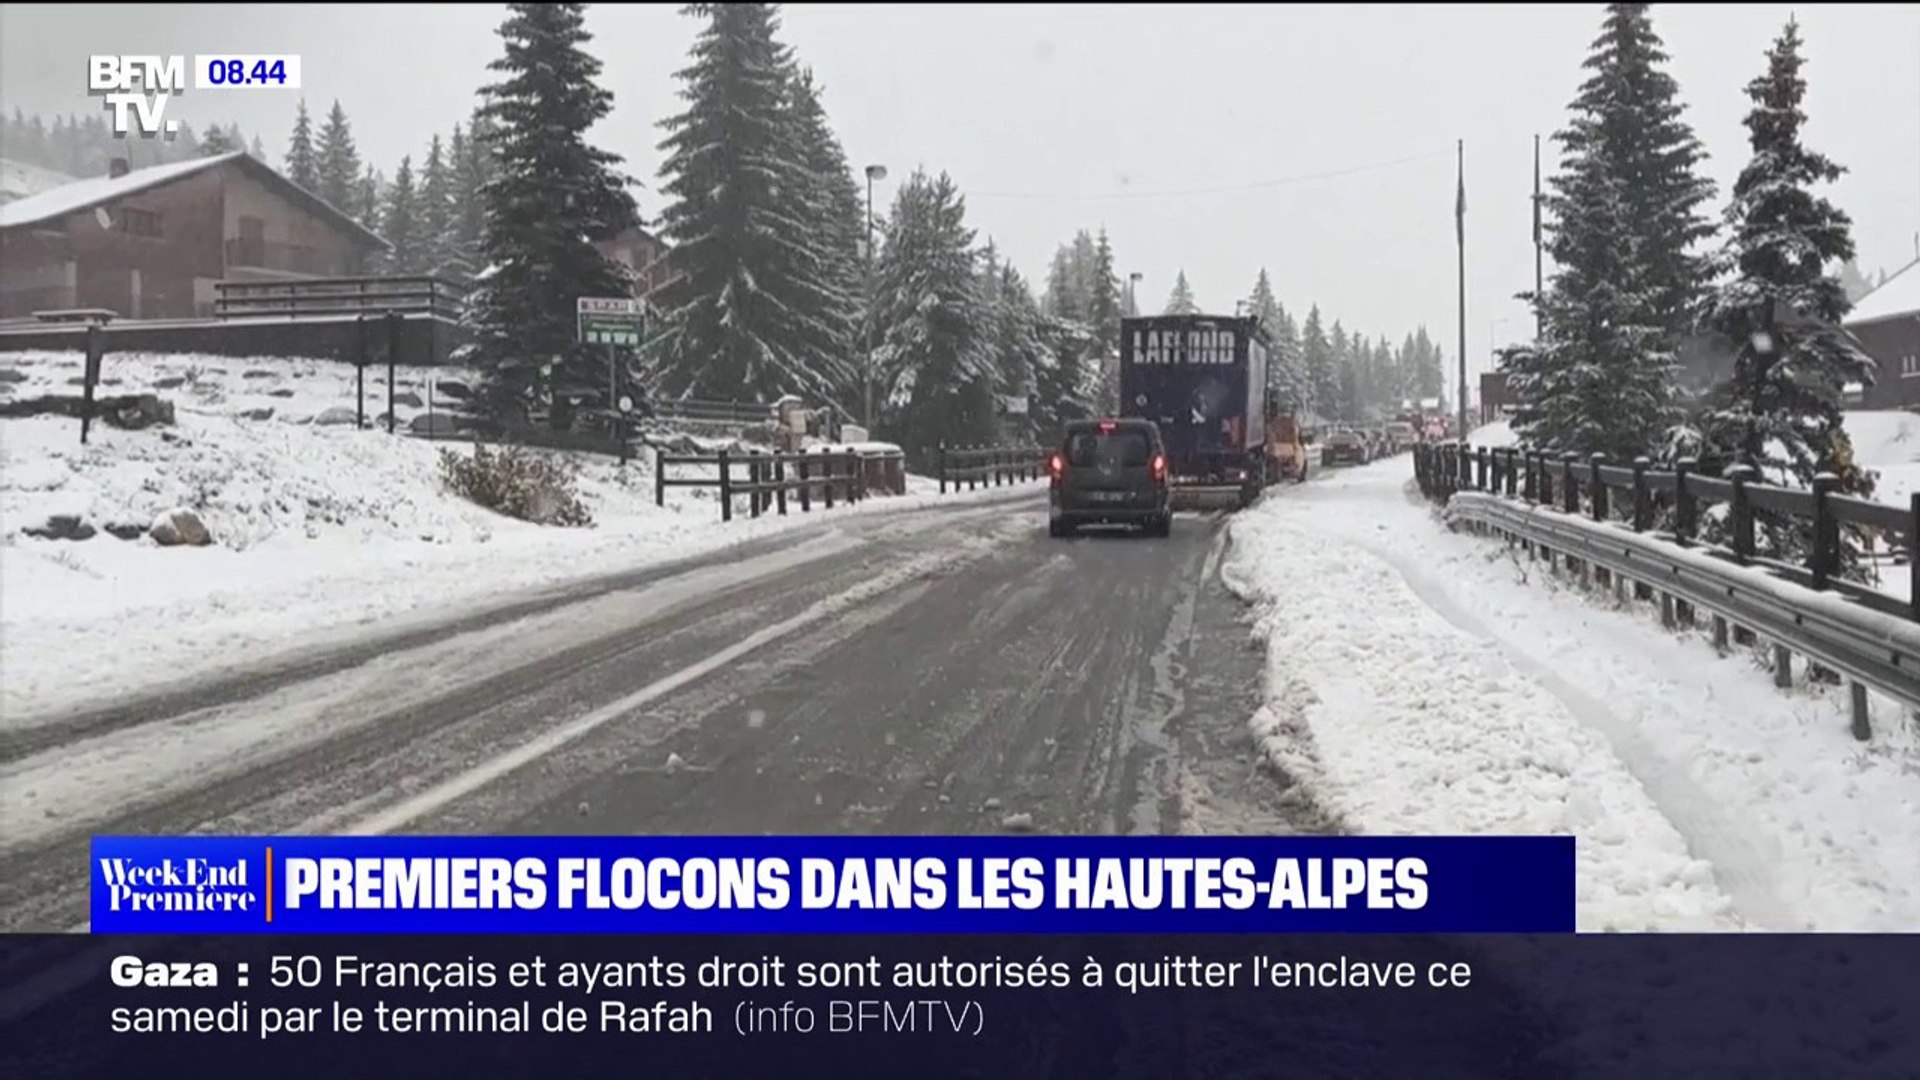 Les images des premiers flocons dans les Hautes-Alpes - Vidéo Dailymotion